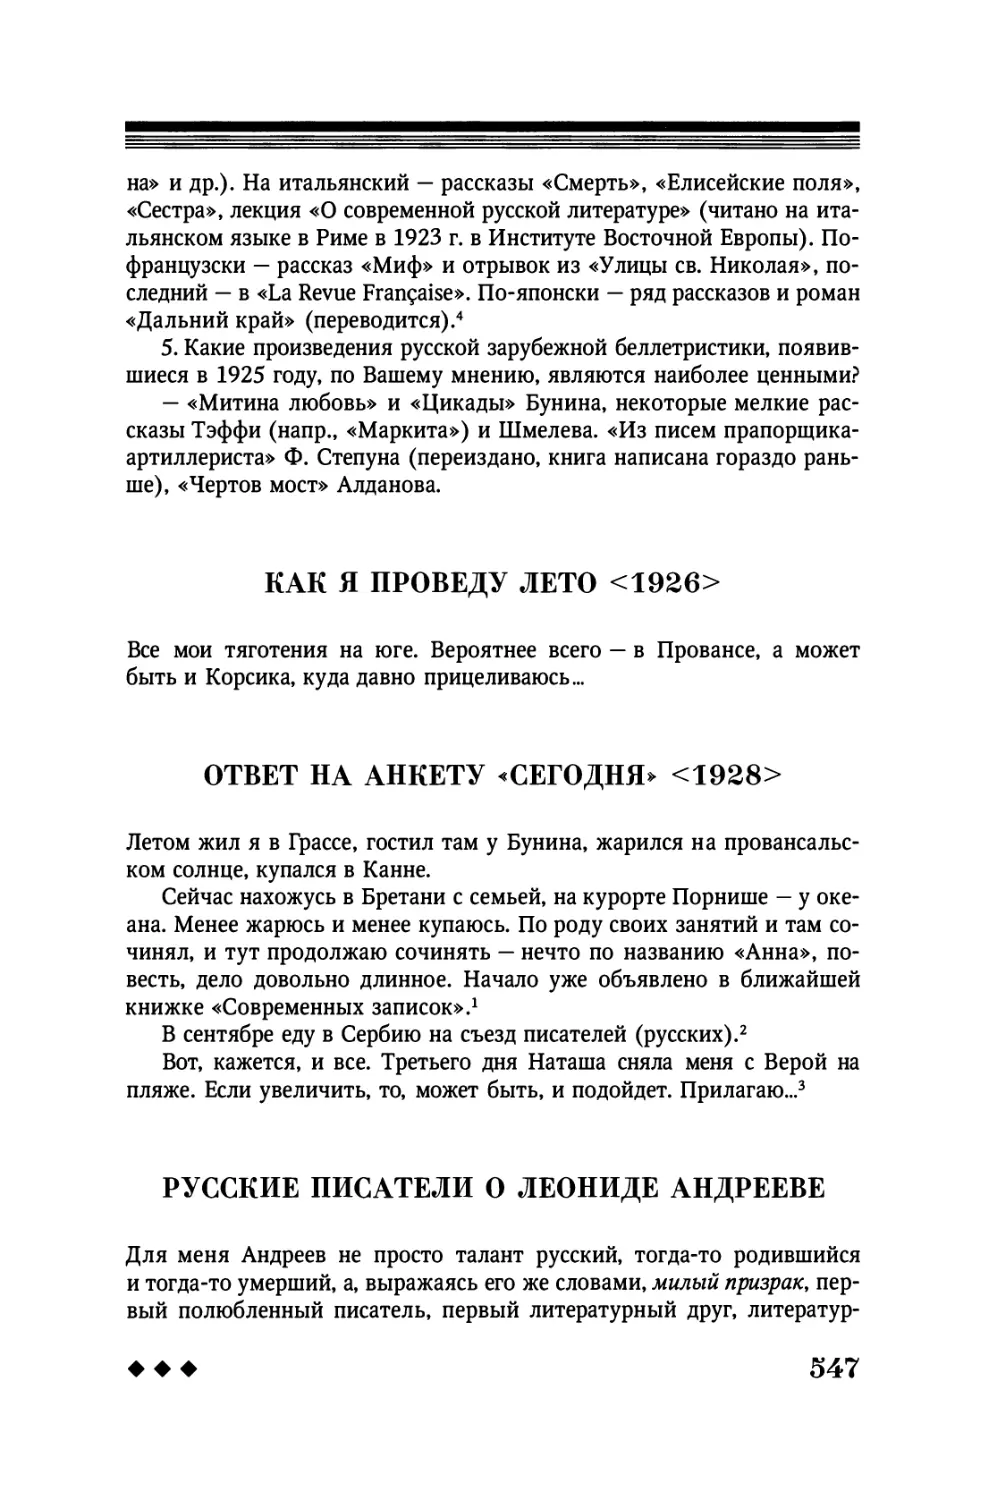 Как я проведу лето <1926>
Ответ на анкету «Сегодня» <1928>
Русские писатели о Леониде Андрееве